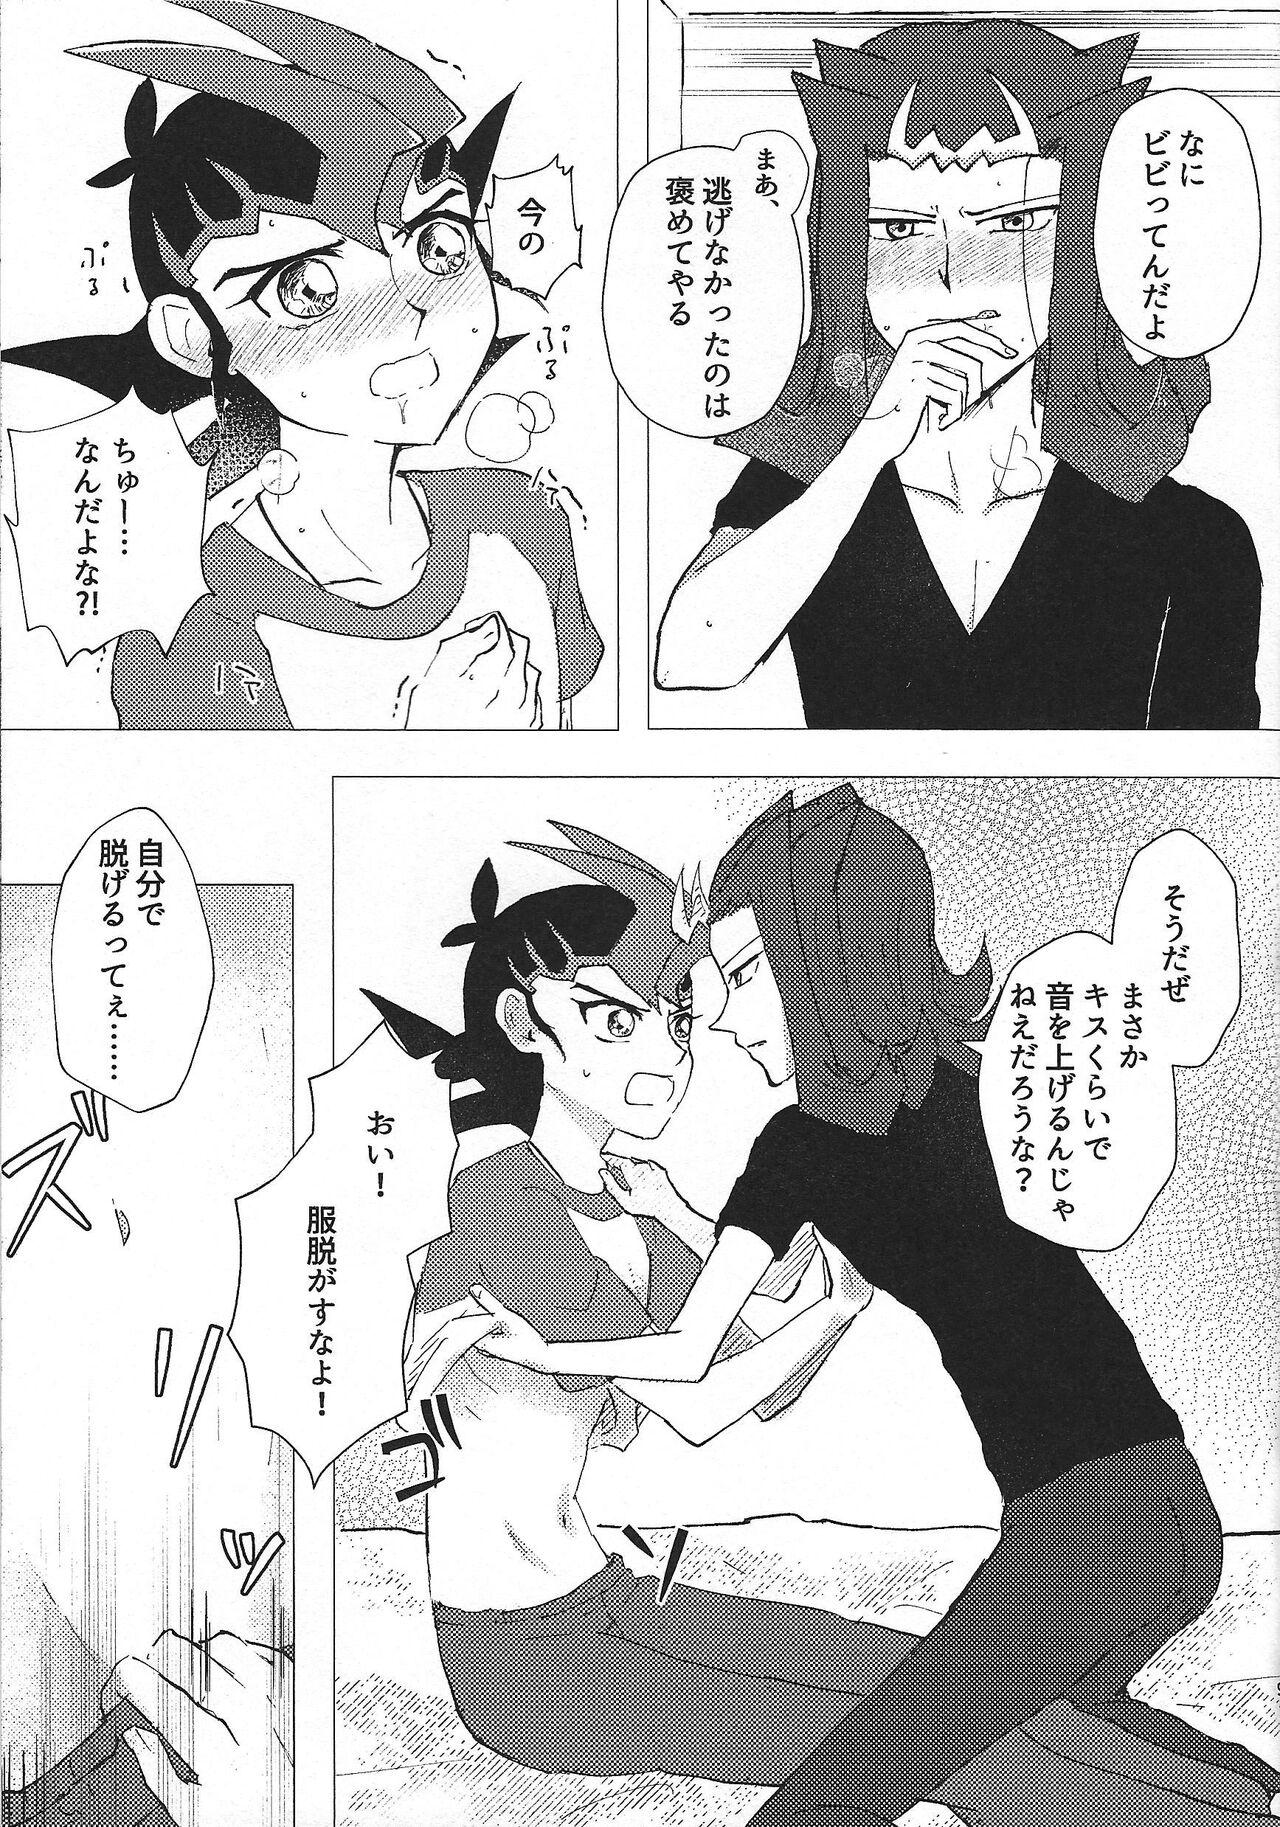 Tetas Omamori no jikan wa oshimaida! - Yu-gi-oh zexal Groupsex - Page 8